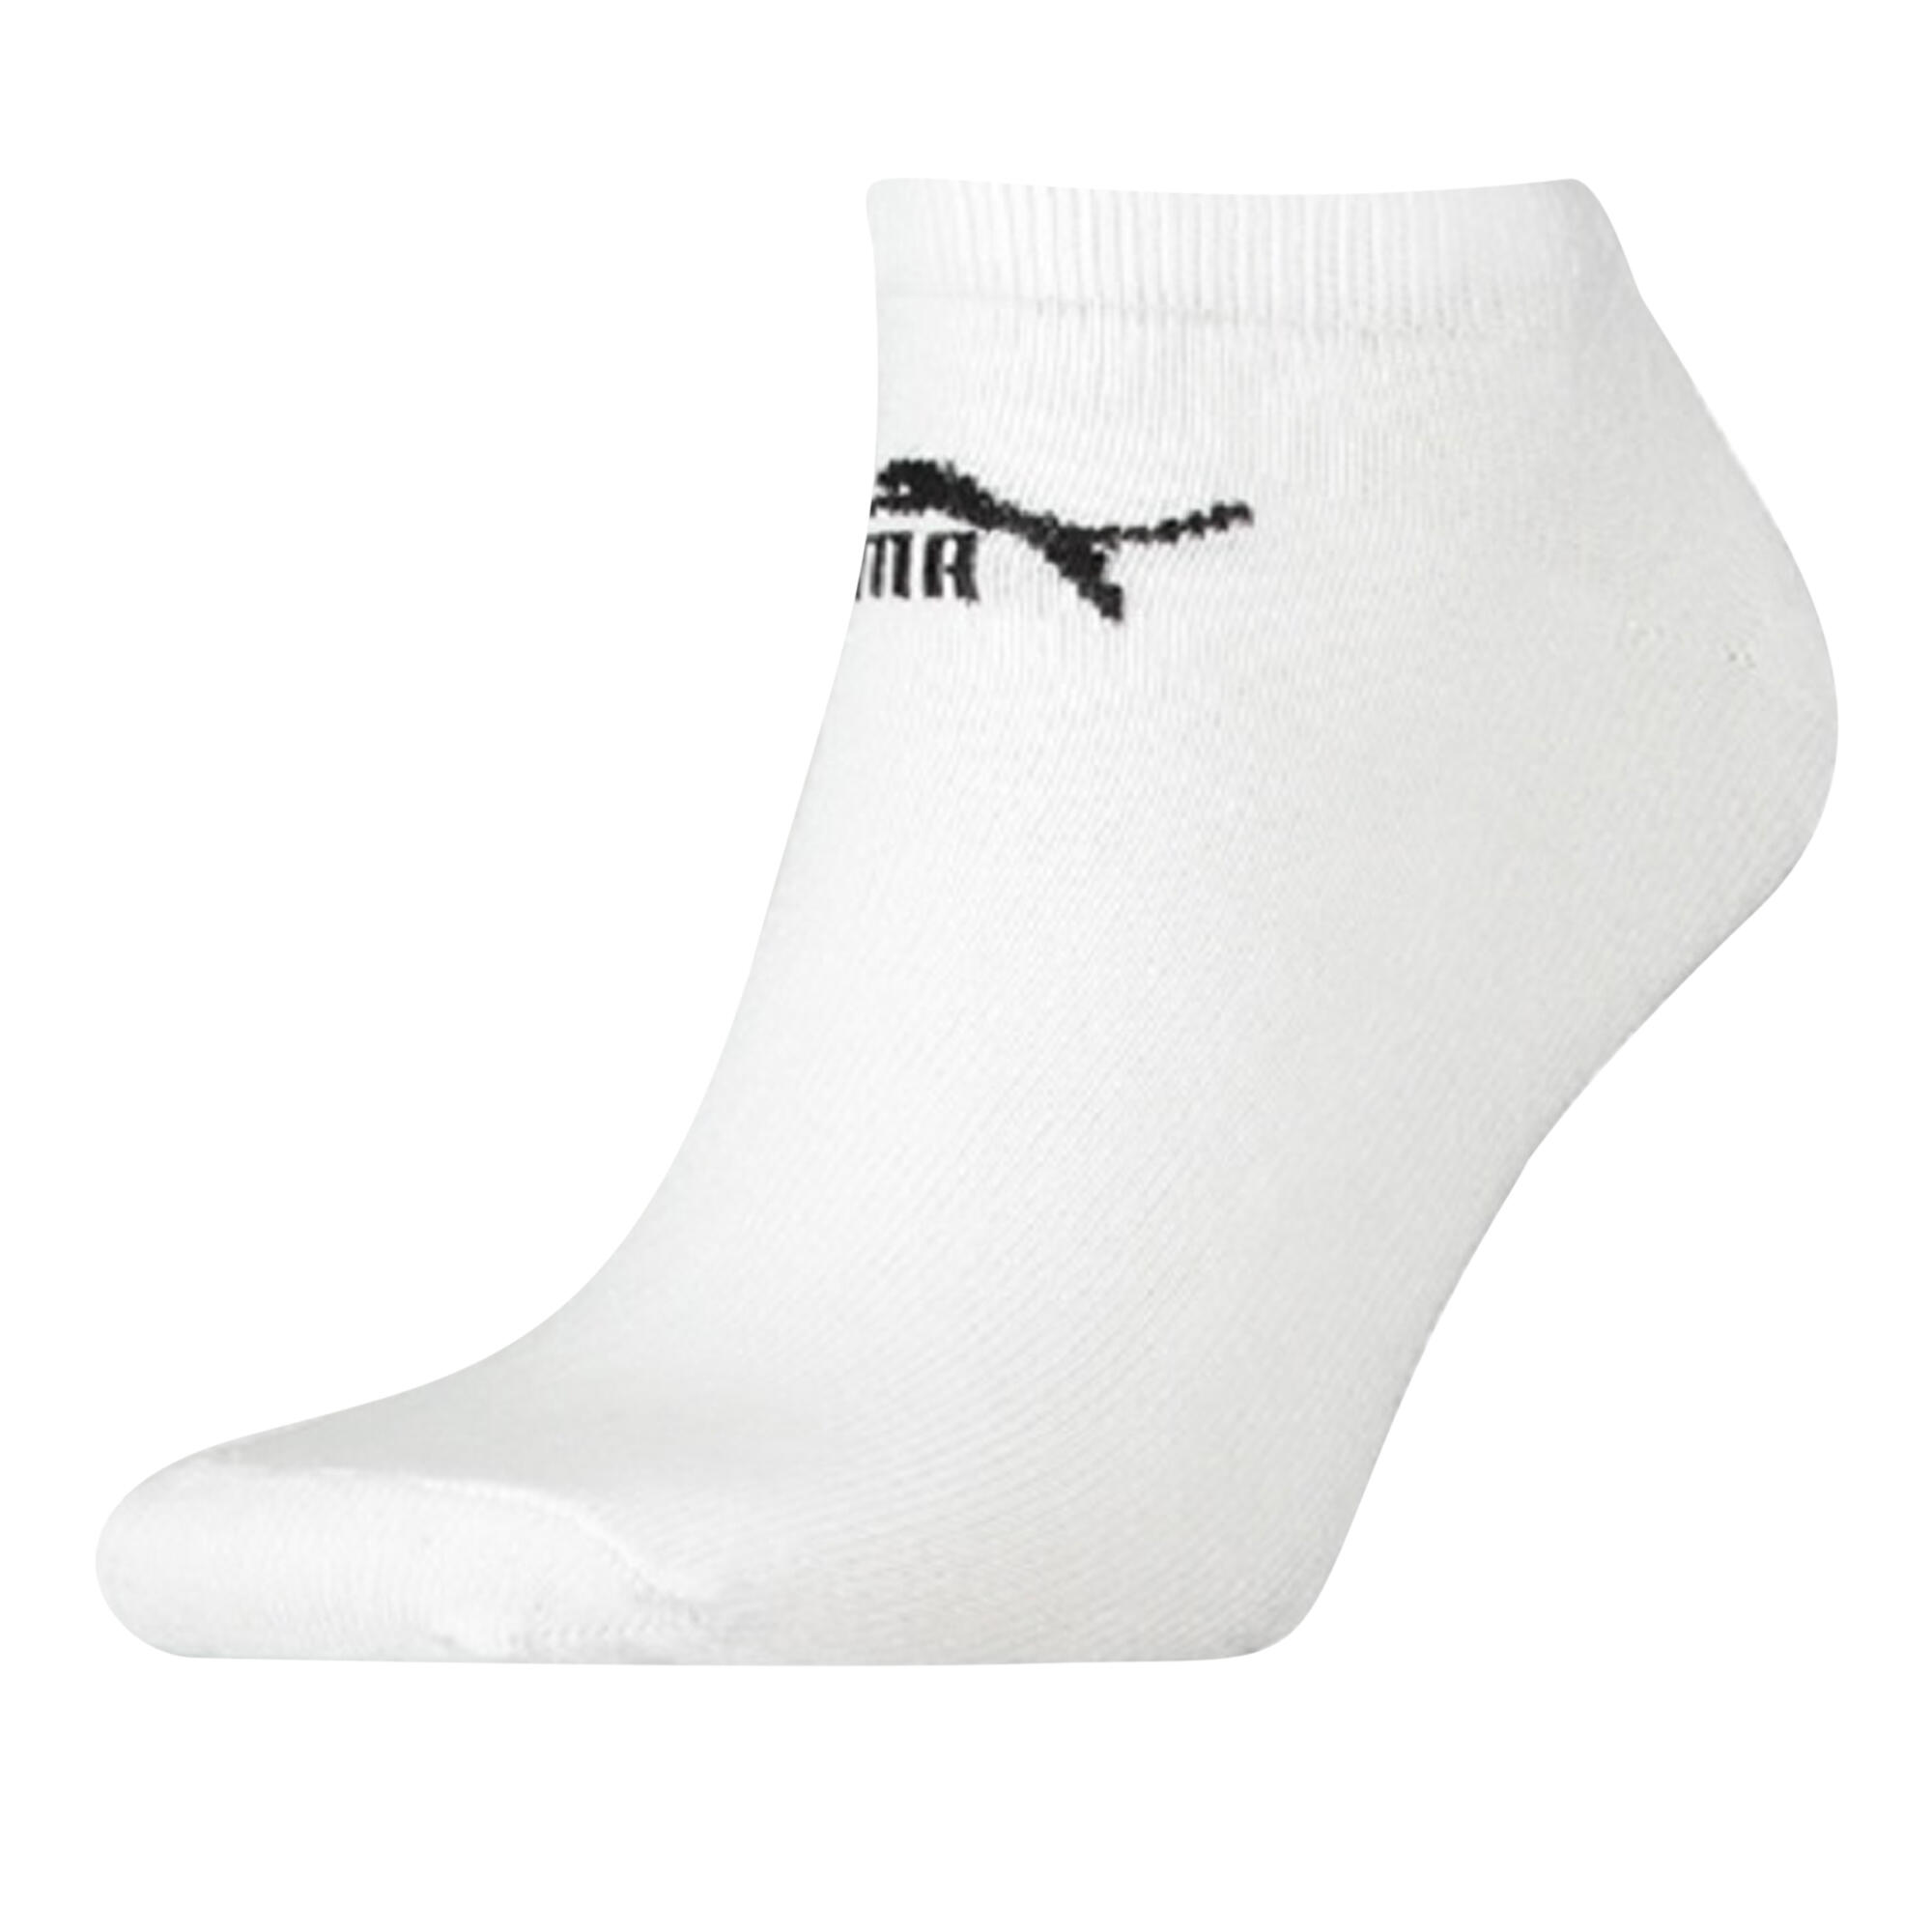 Unisex Adult Trainer Socks (Pack of 3) (White) 1/3